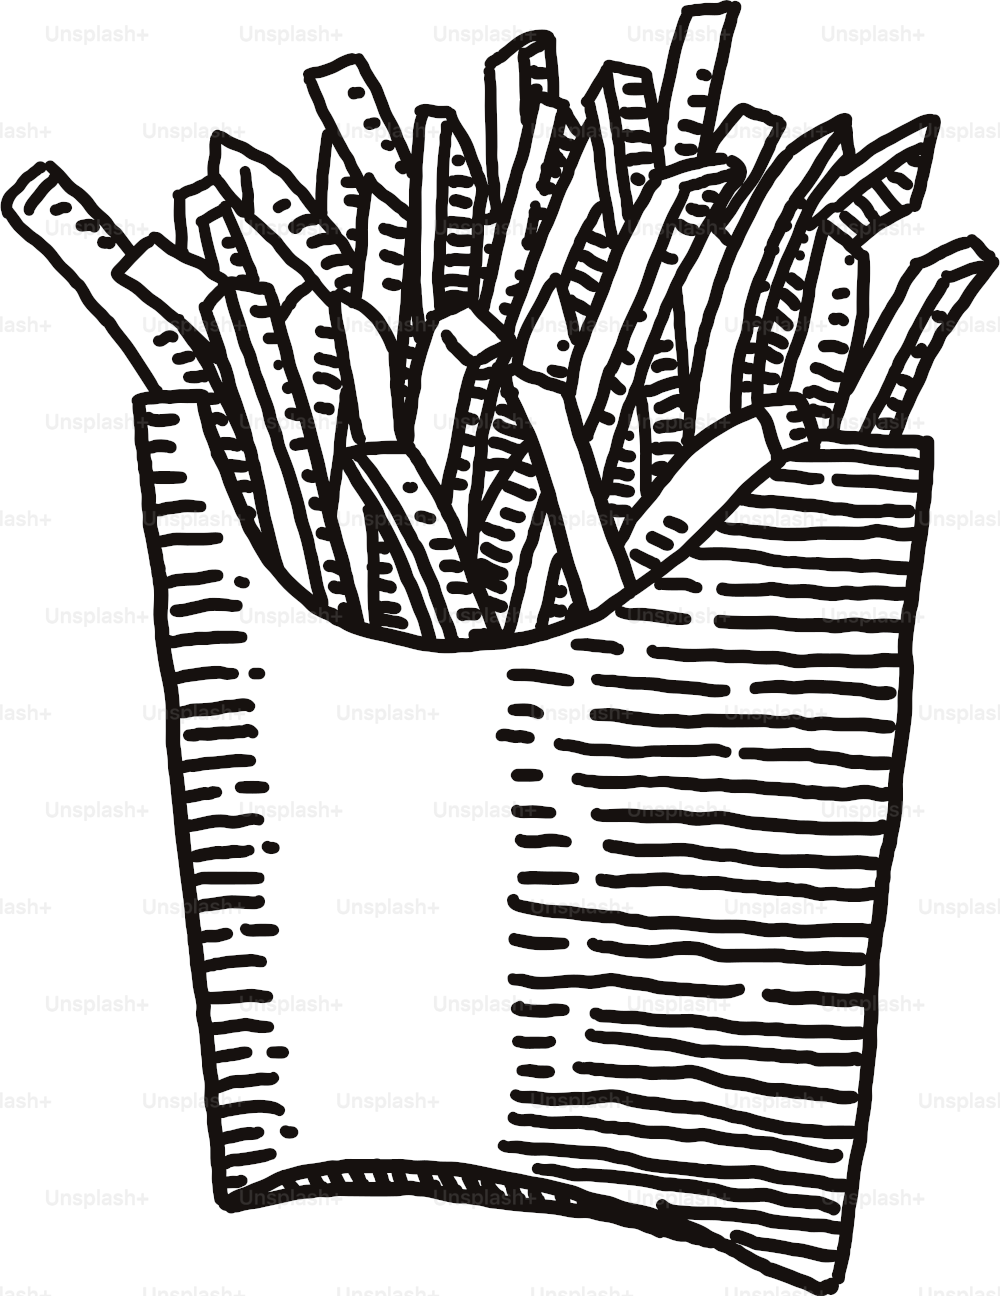 Disegno semplice e vettoriale di una confezione di patatine fritte